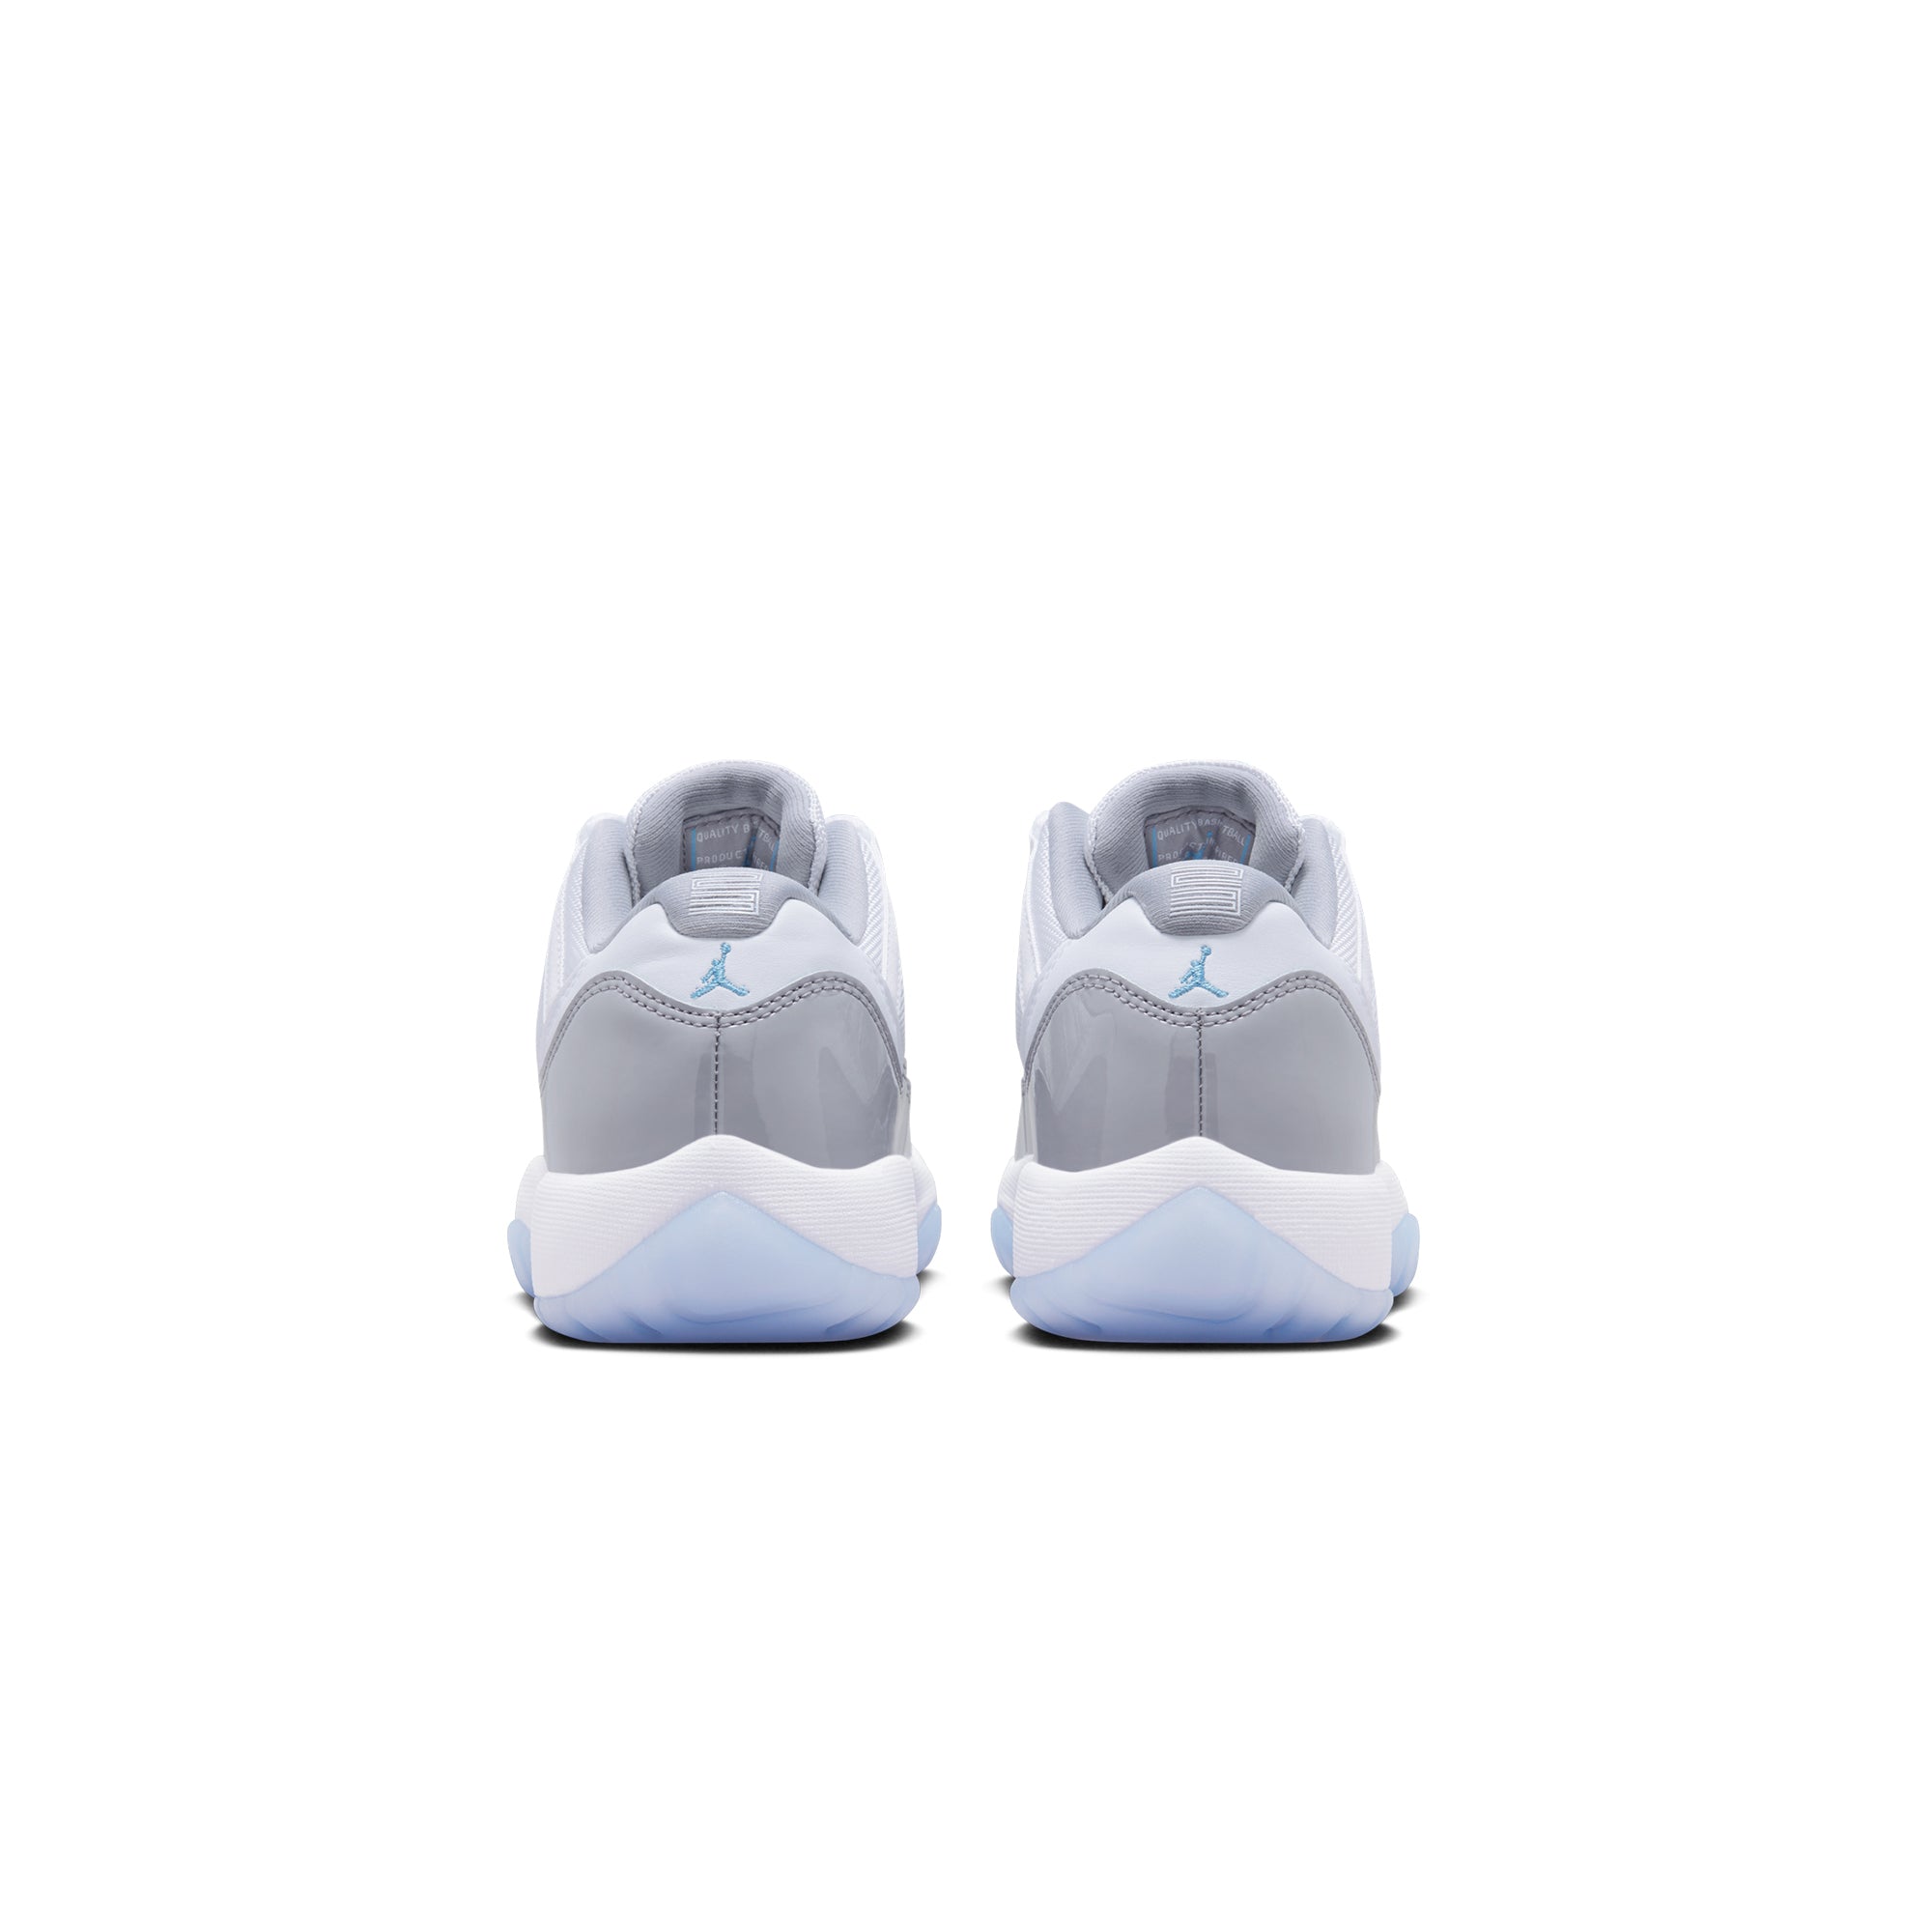 Air Jordan 11 Little Kids Retro Shoes – Extra Butter